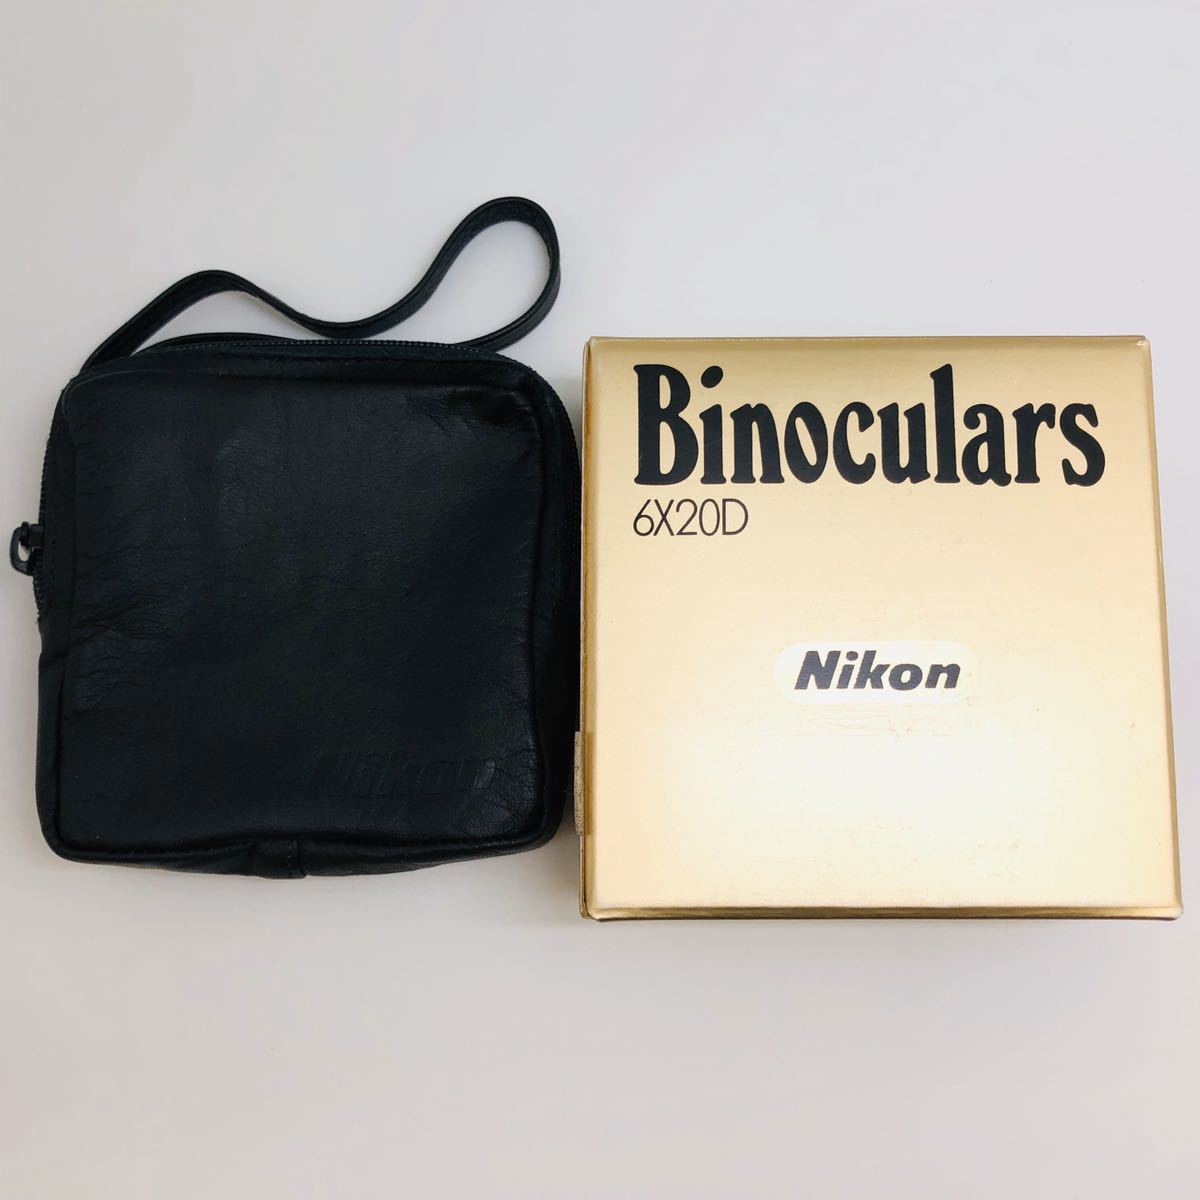 新品 Nikon ニコン 小型ダハ双眼鏡 6×20D 展示品